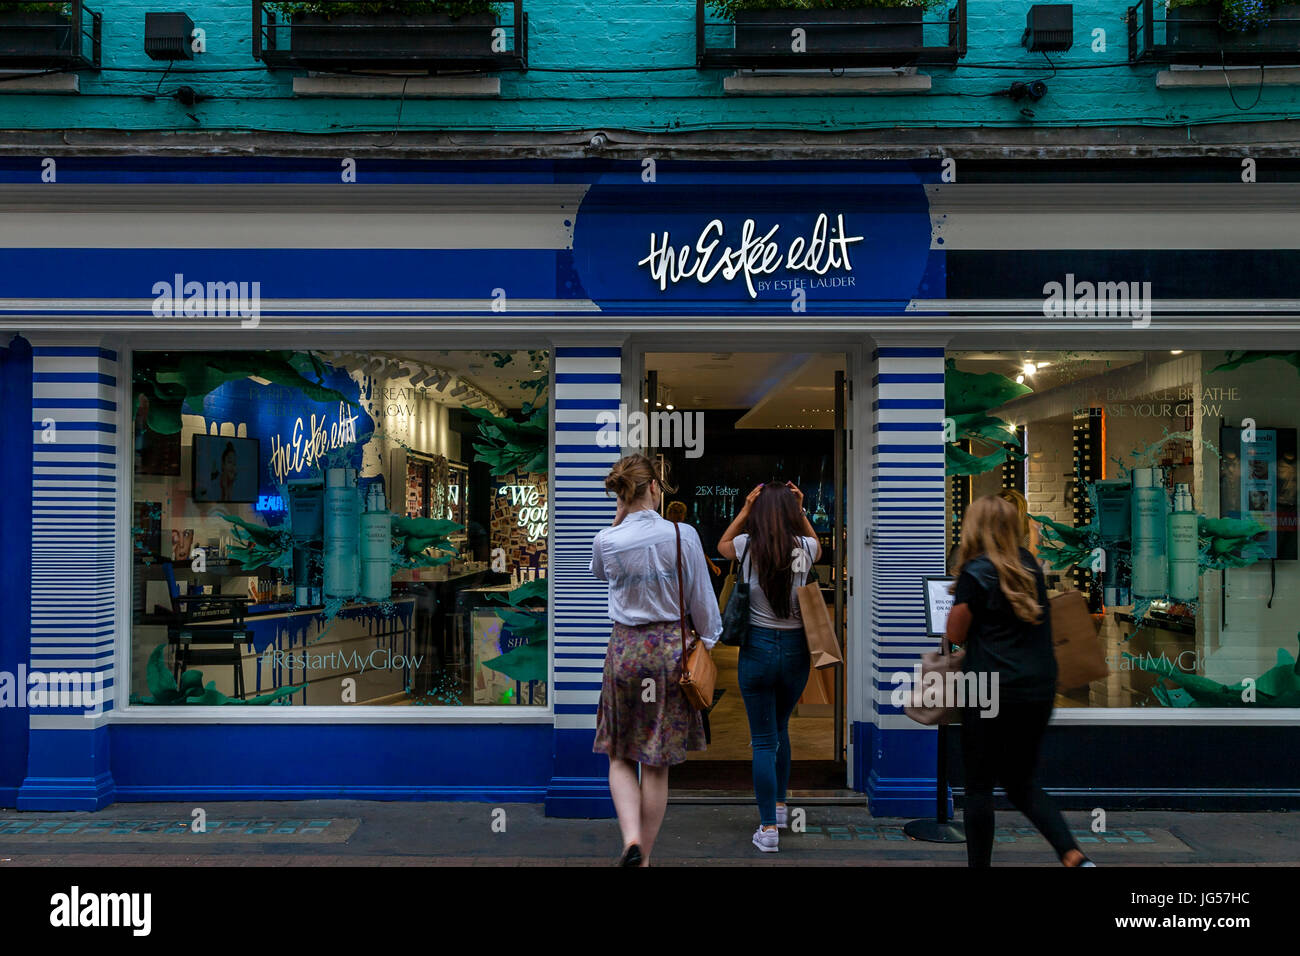 El Estee Editar Store, Carnaby Street, Londres, Reino Unido. Foto de stock